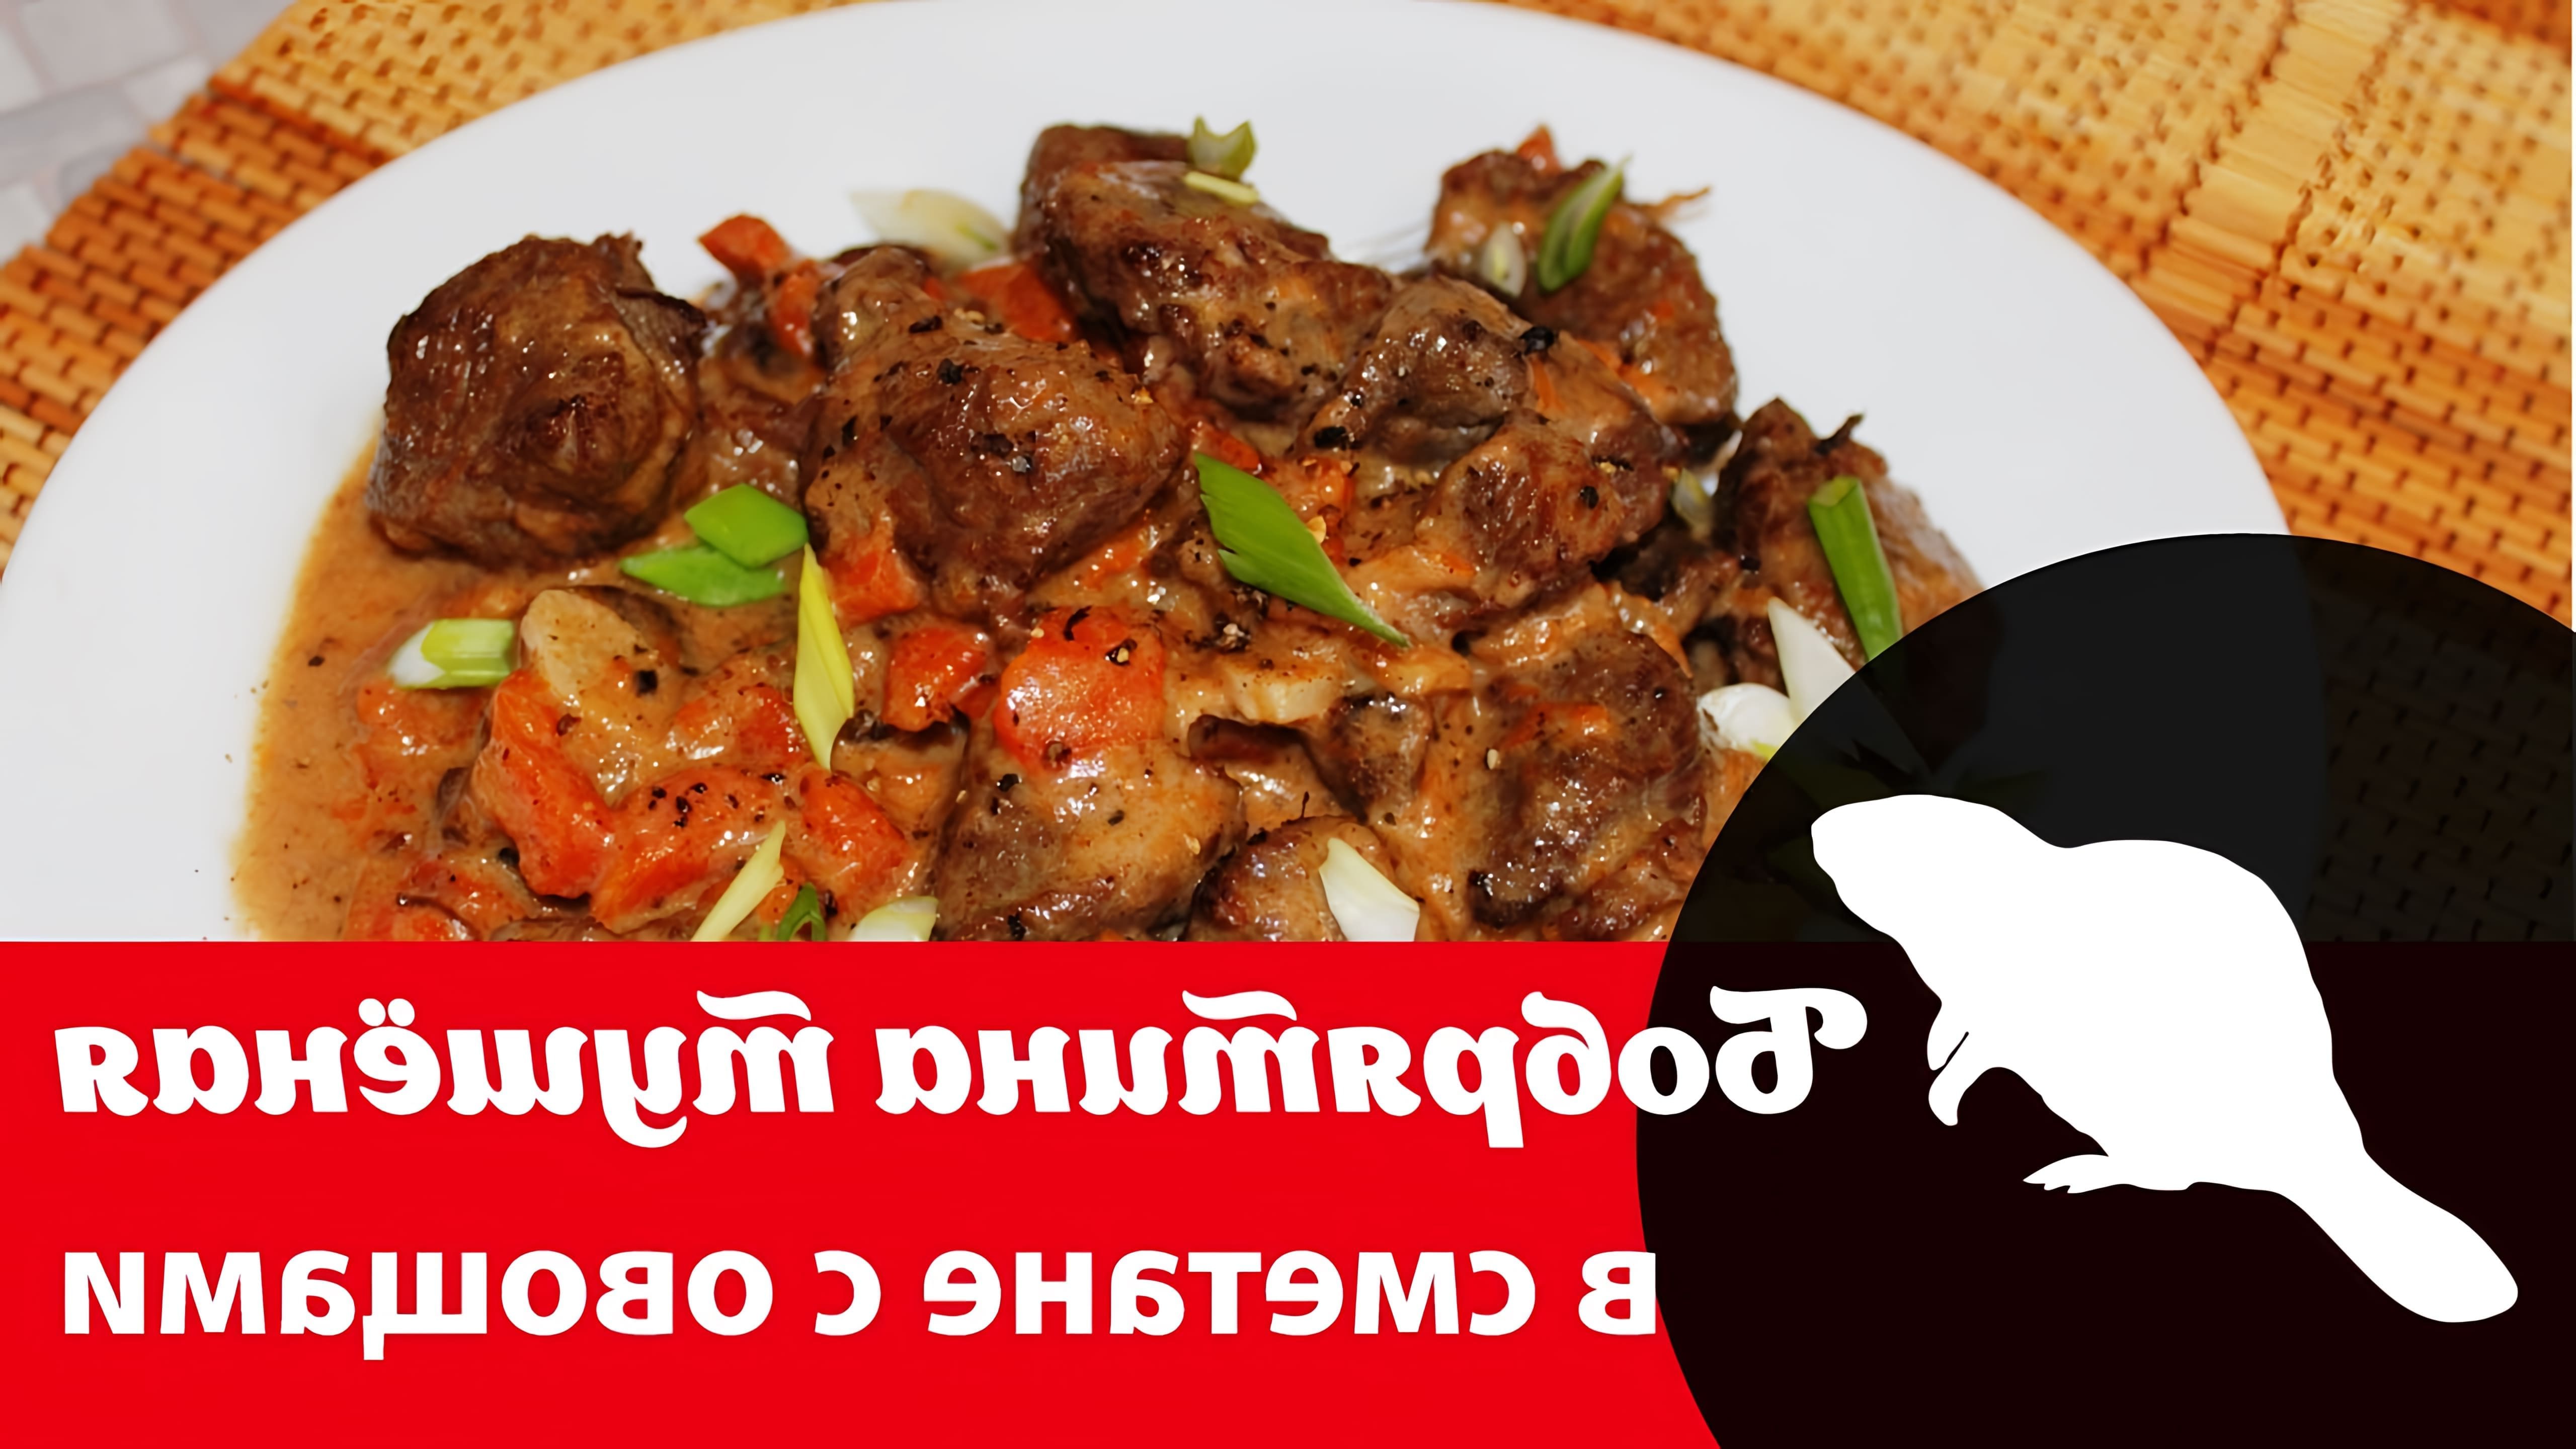 В данном видео демонстрируется рецепт приготовления мяса бобра, тушеного в казане с овощами и специями